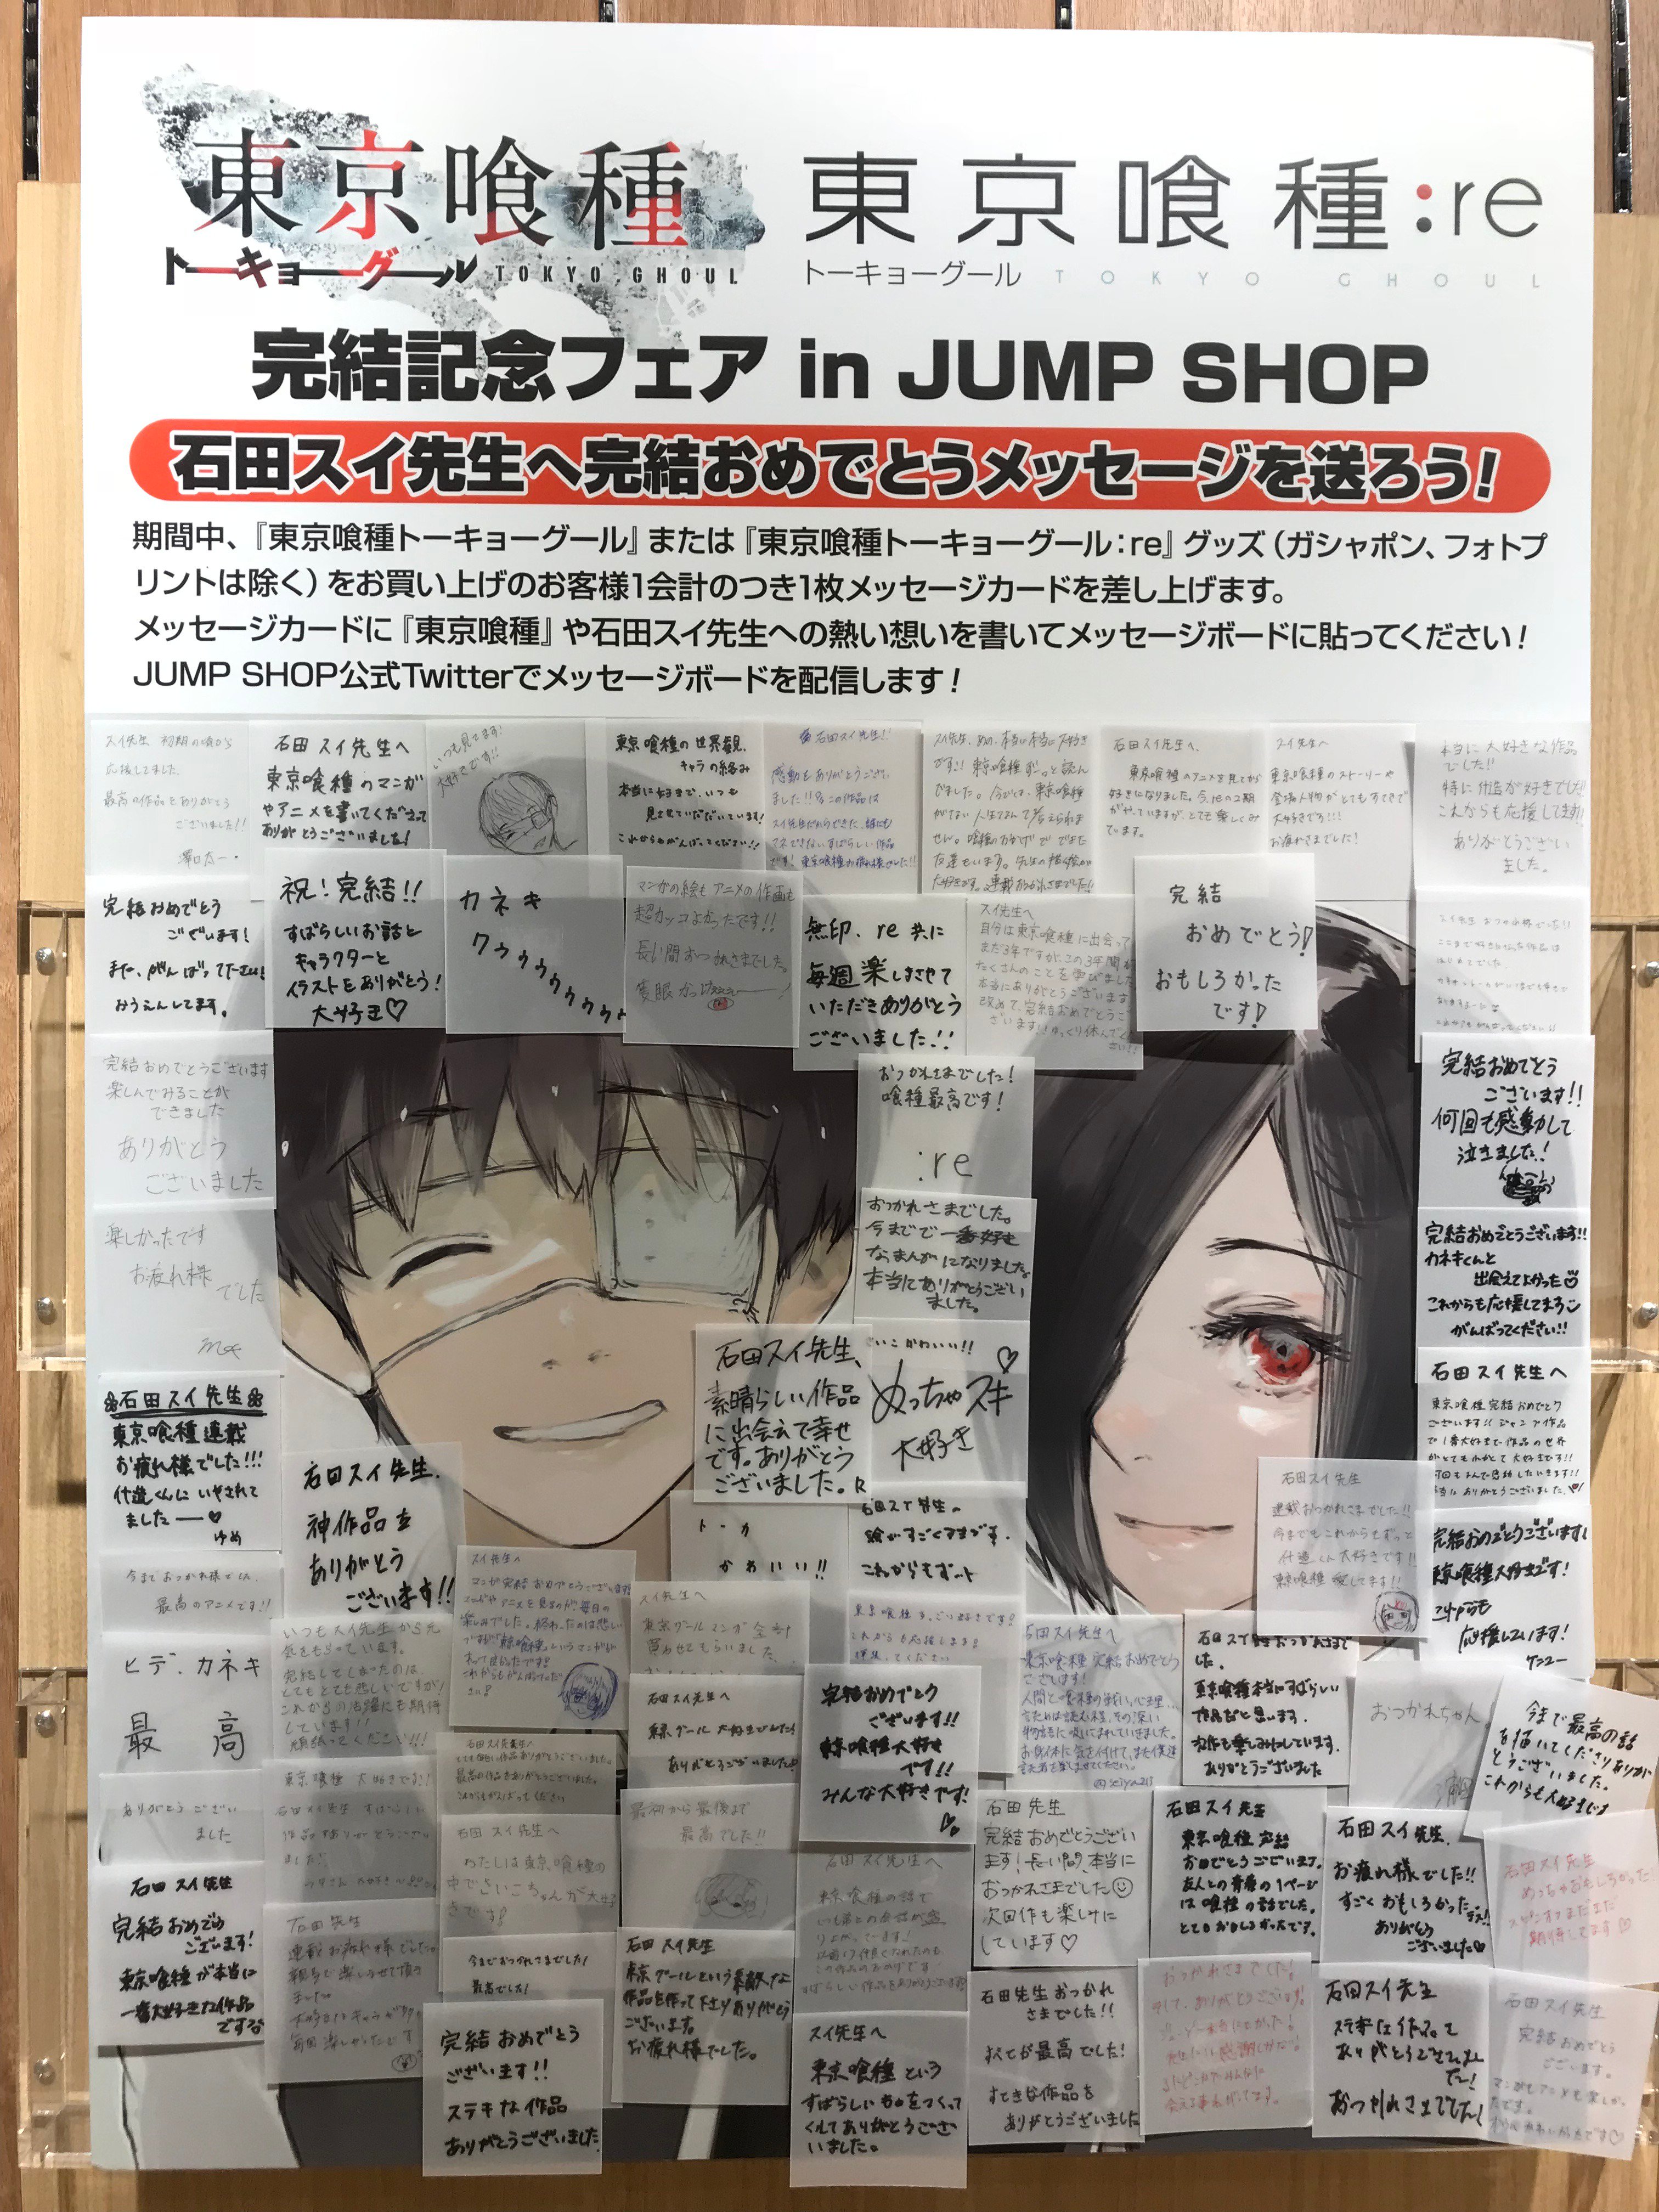 ジャンプショップ Jump Shop 公式 東京喰種 トーキョーグール Re フェア開催中 石田スイ先生へ完結おめでとうメッセージを送ろう 写真は Jump Shop仙台店のメッセージボードです 多くのメッセージをありがとうございます 東京喰種